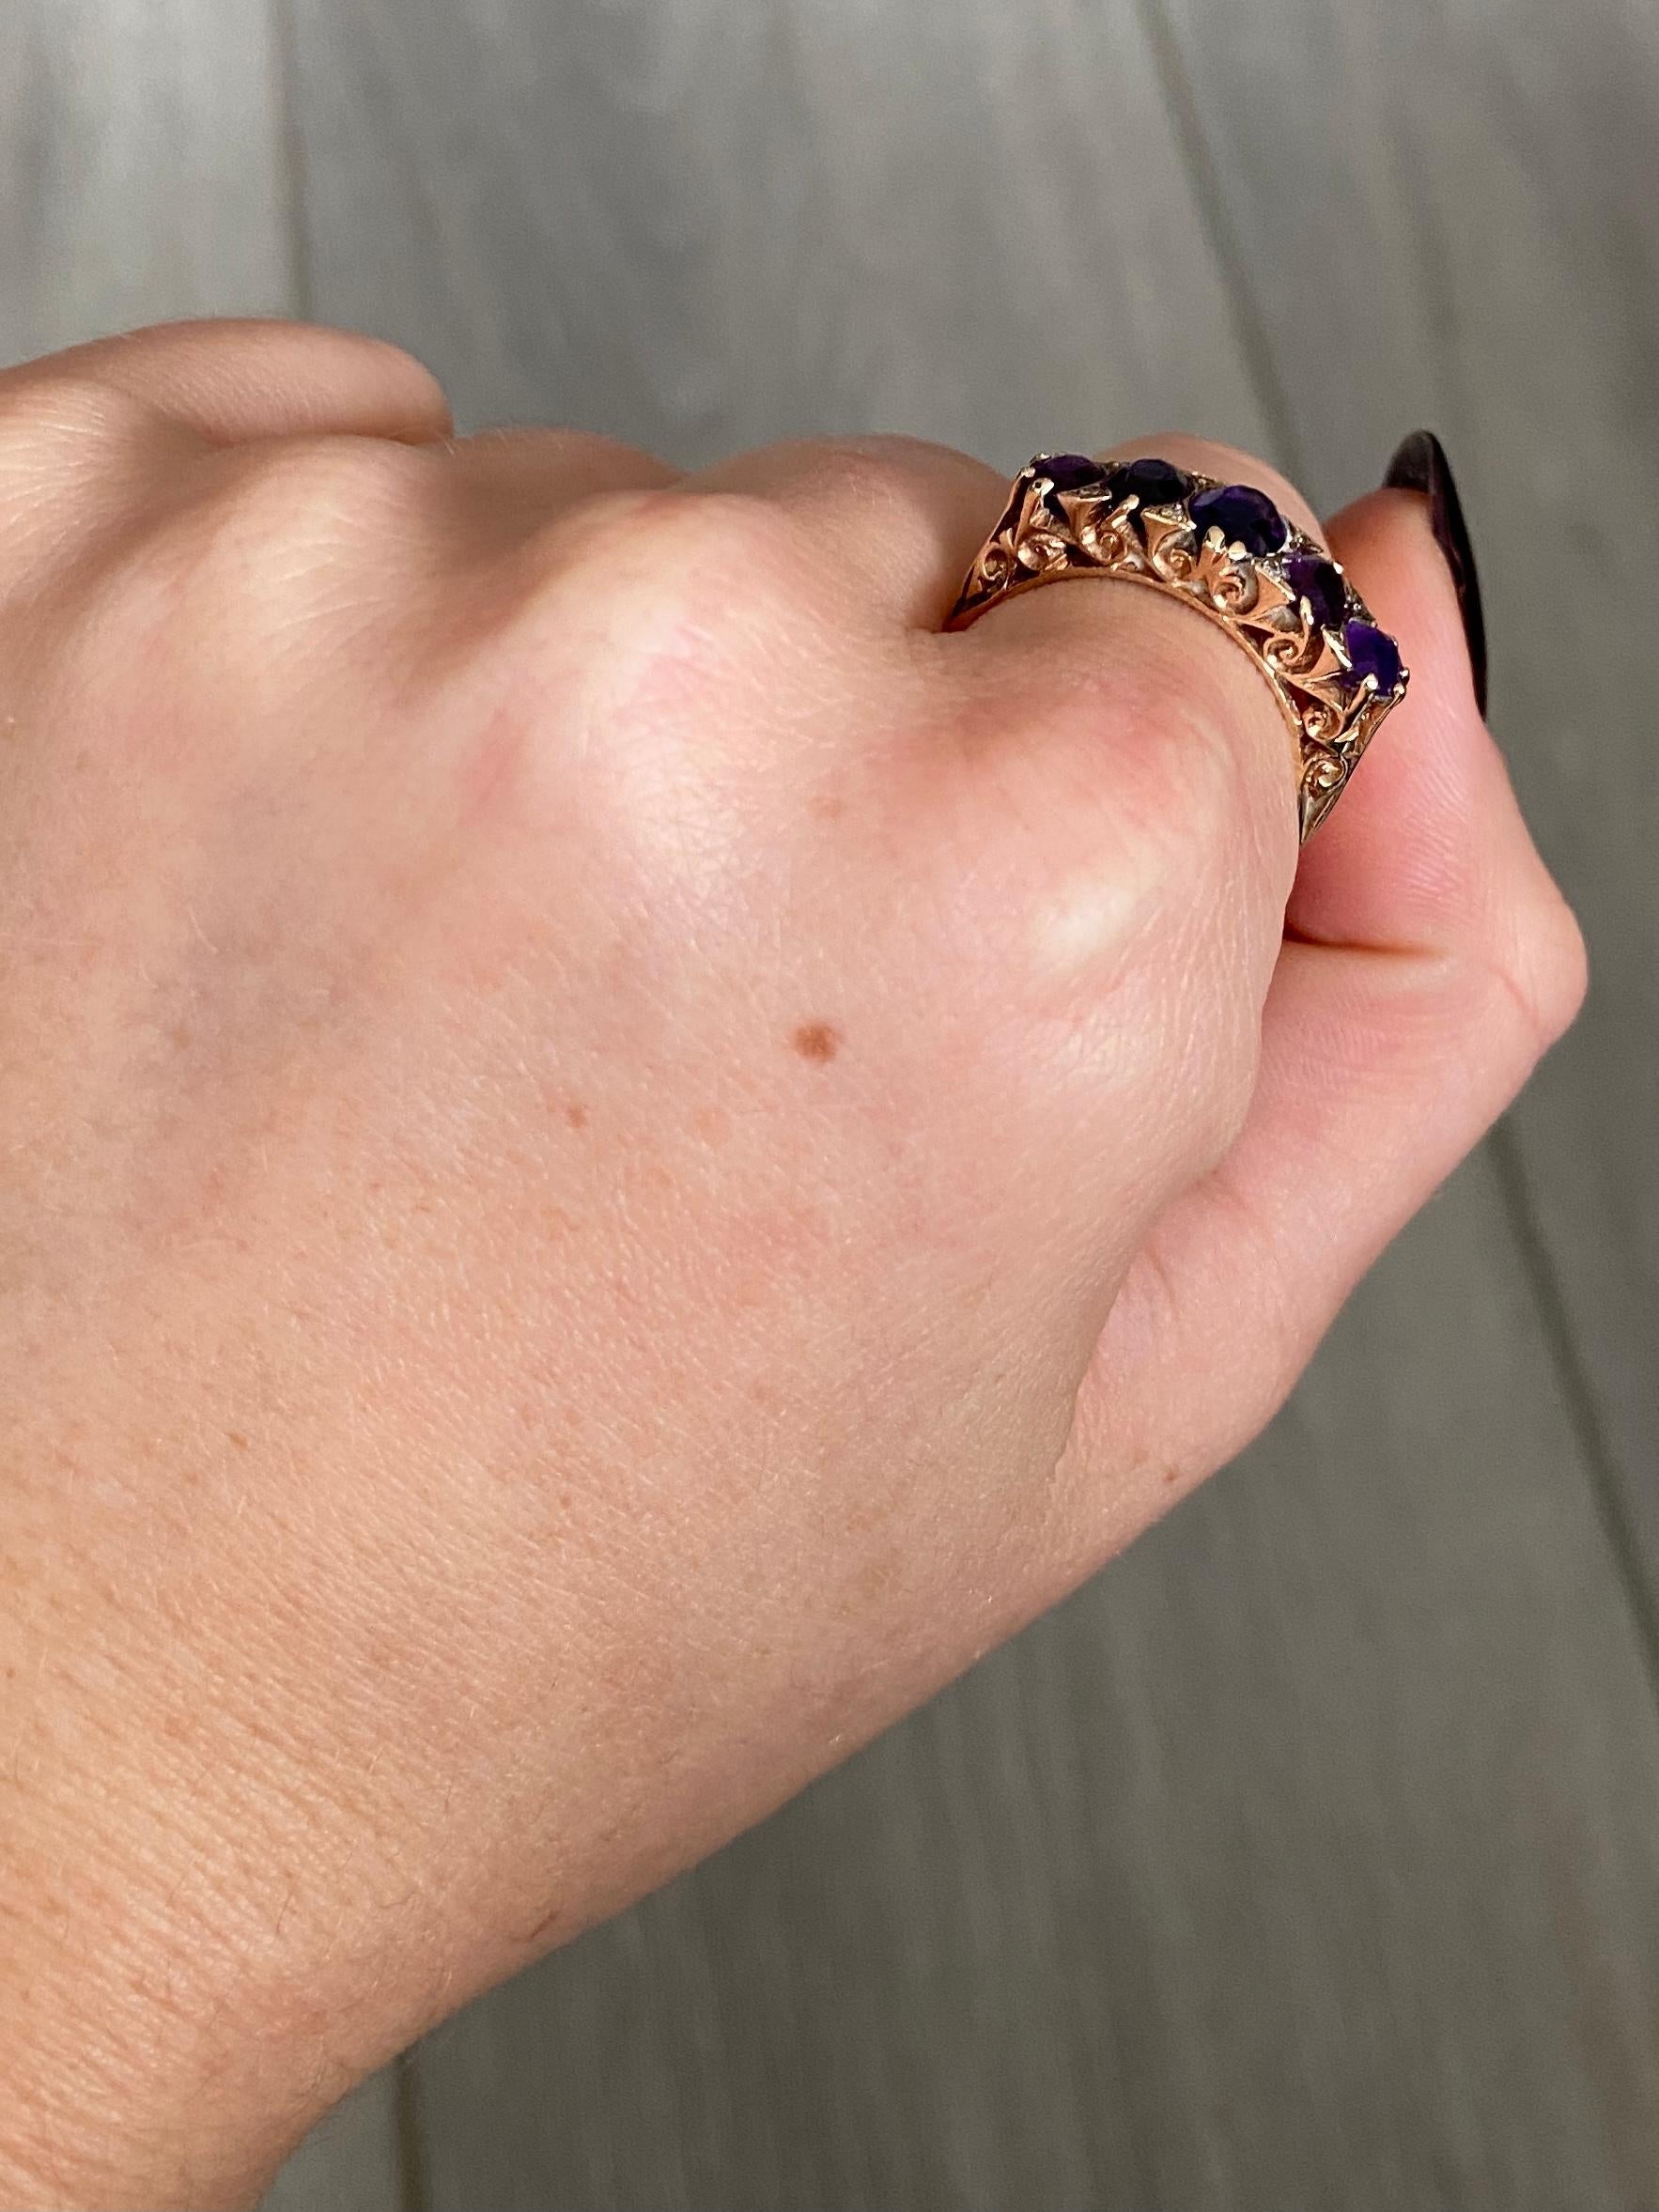 Dieser Ring enthält nicht nur fünf leuchtende und funkelnde Amethyste, sondern auch Diamantenspitzen. Alle Steine sind in Gold gefasst und haben eine verzierte Galerie. Sogar die Schultern dieses Rings sind mit dem Wirbeldetail versehen.